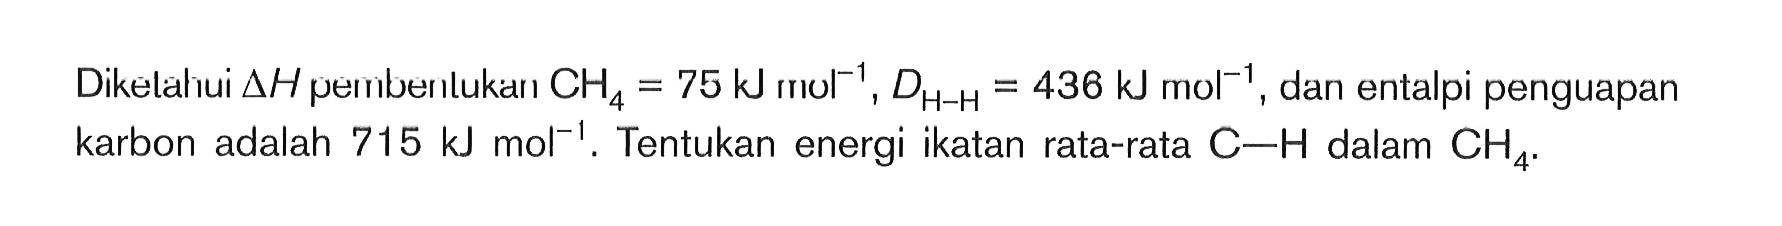 Dikelahui deltaH peinberlukan CH4 = 75 kJ mol^-1, DH-H = 436 kJ mol^-1, dan entalpi penguapan karbon adalah 715 kJ mol^-1. Tentukan energi ikatan rata-rata C-H dalam CH4.